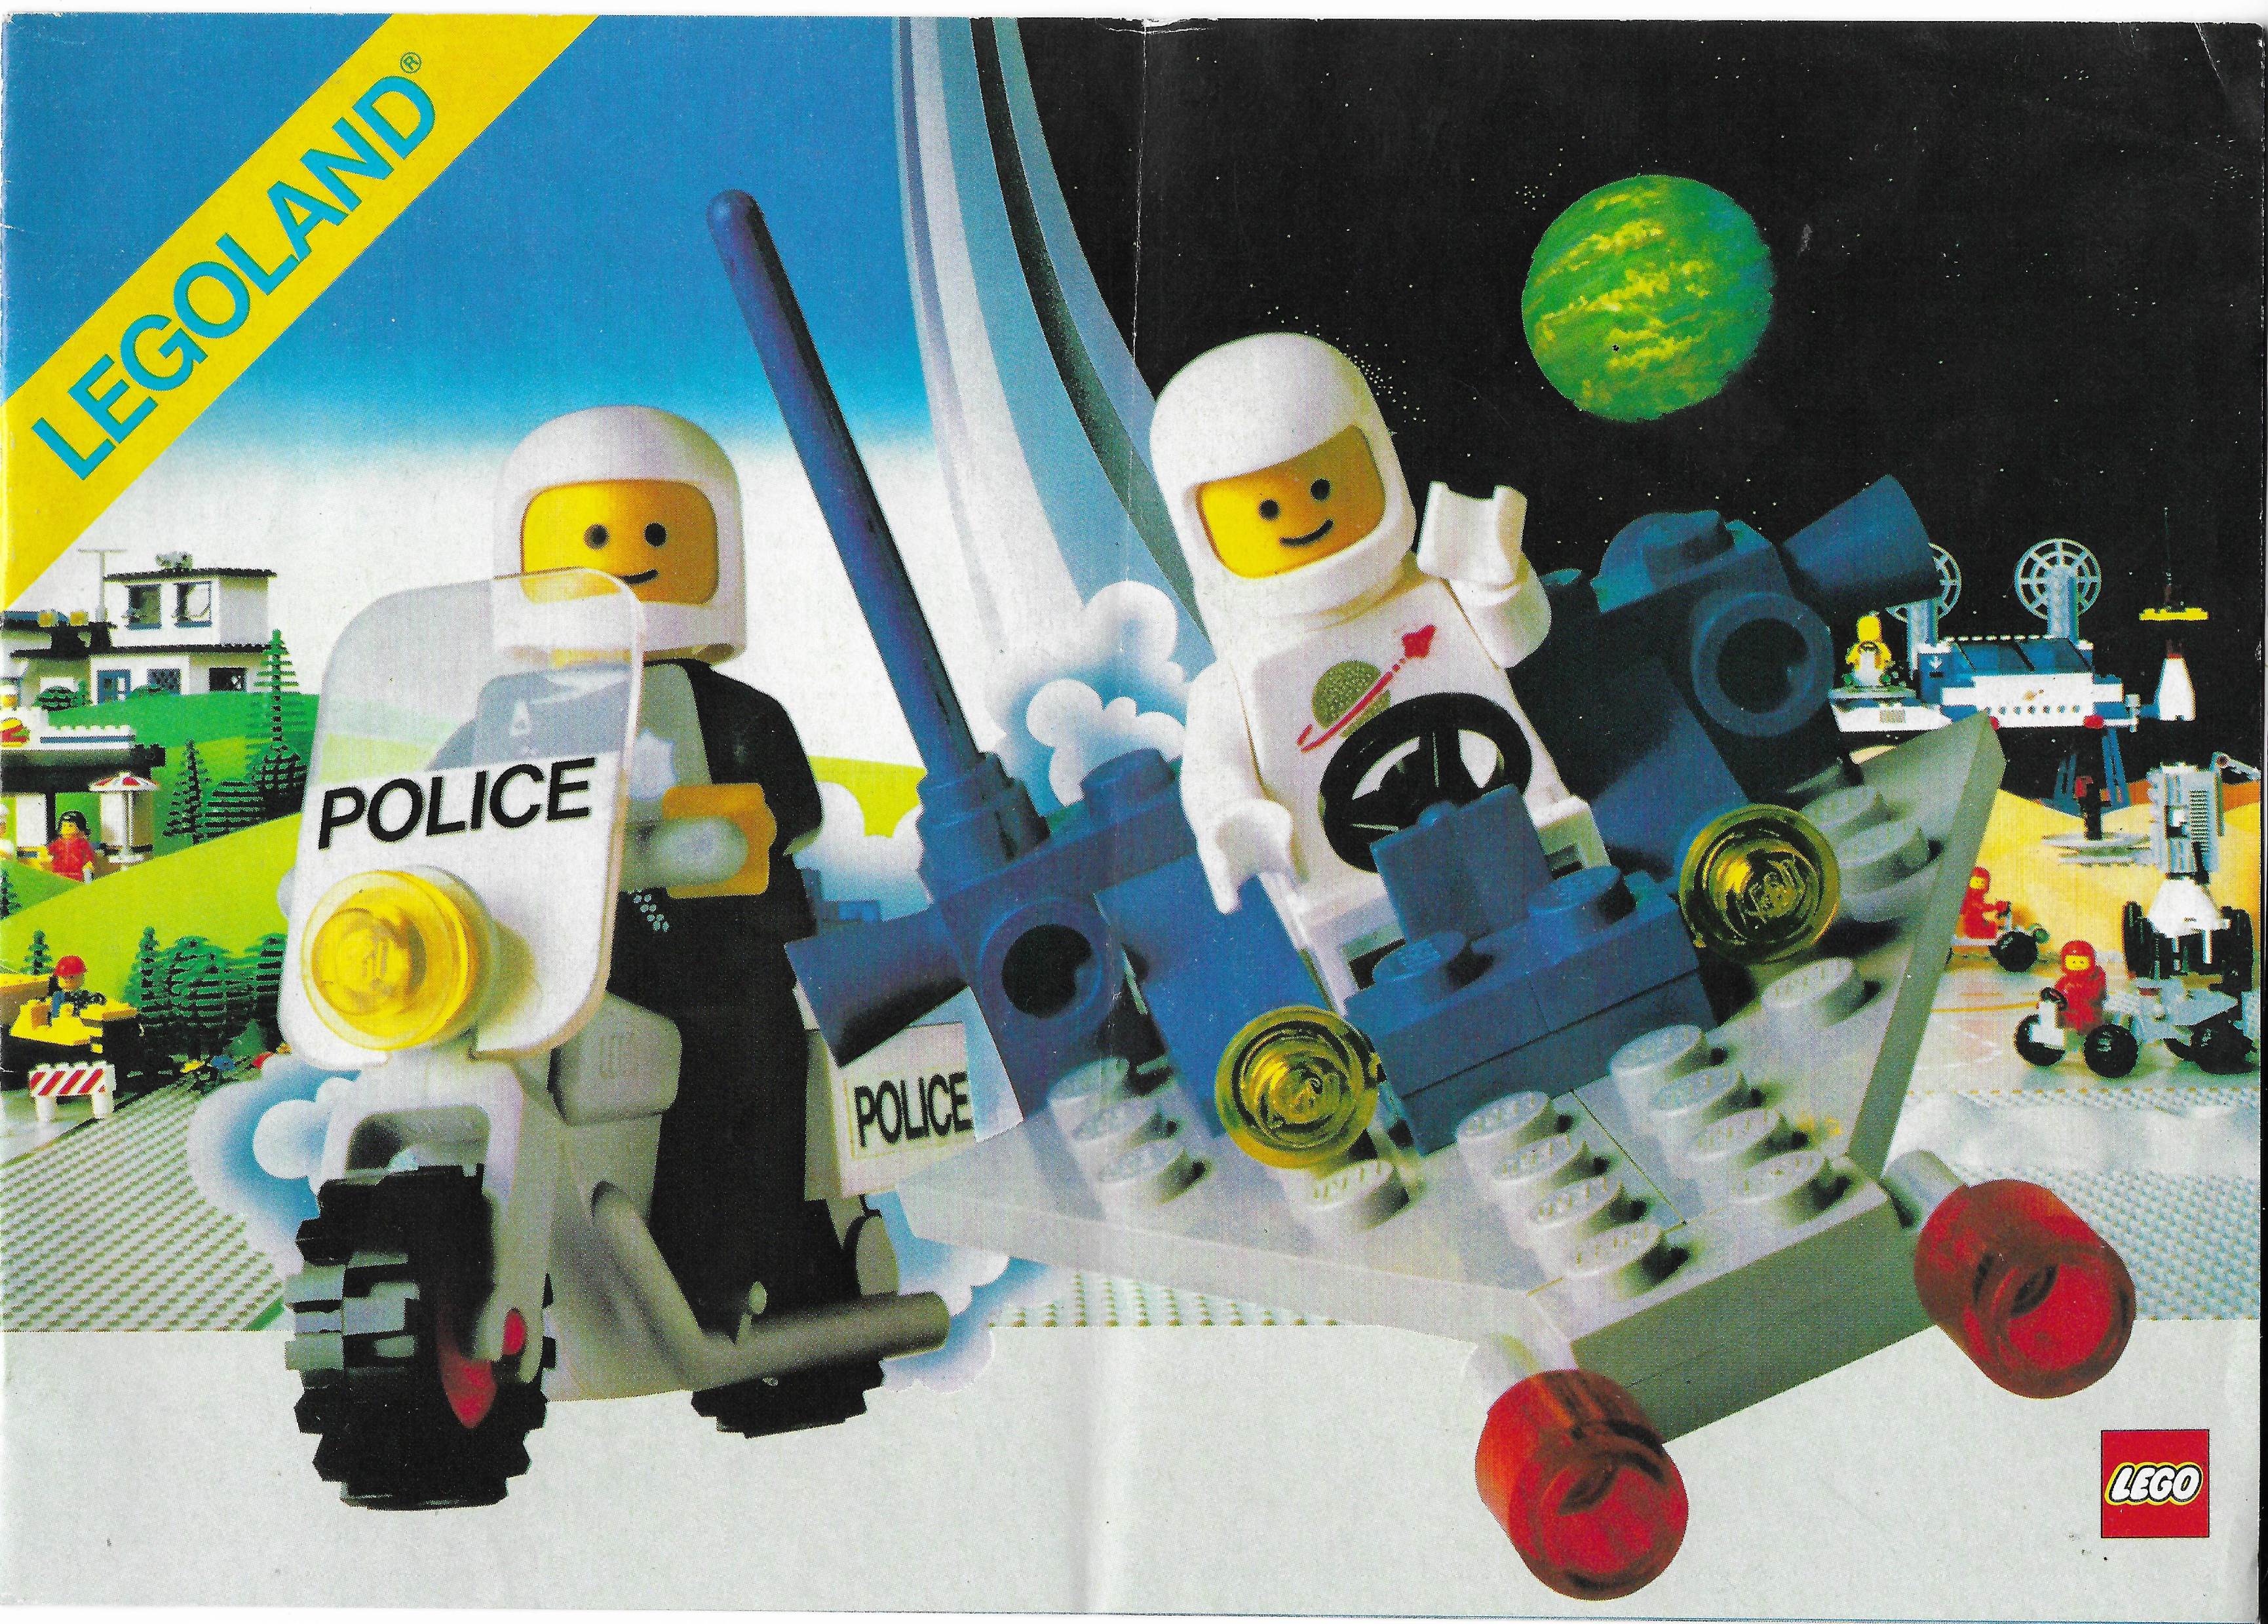 12 oldalas Lego katalógus 1983-ból